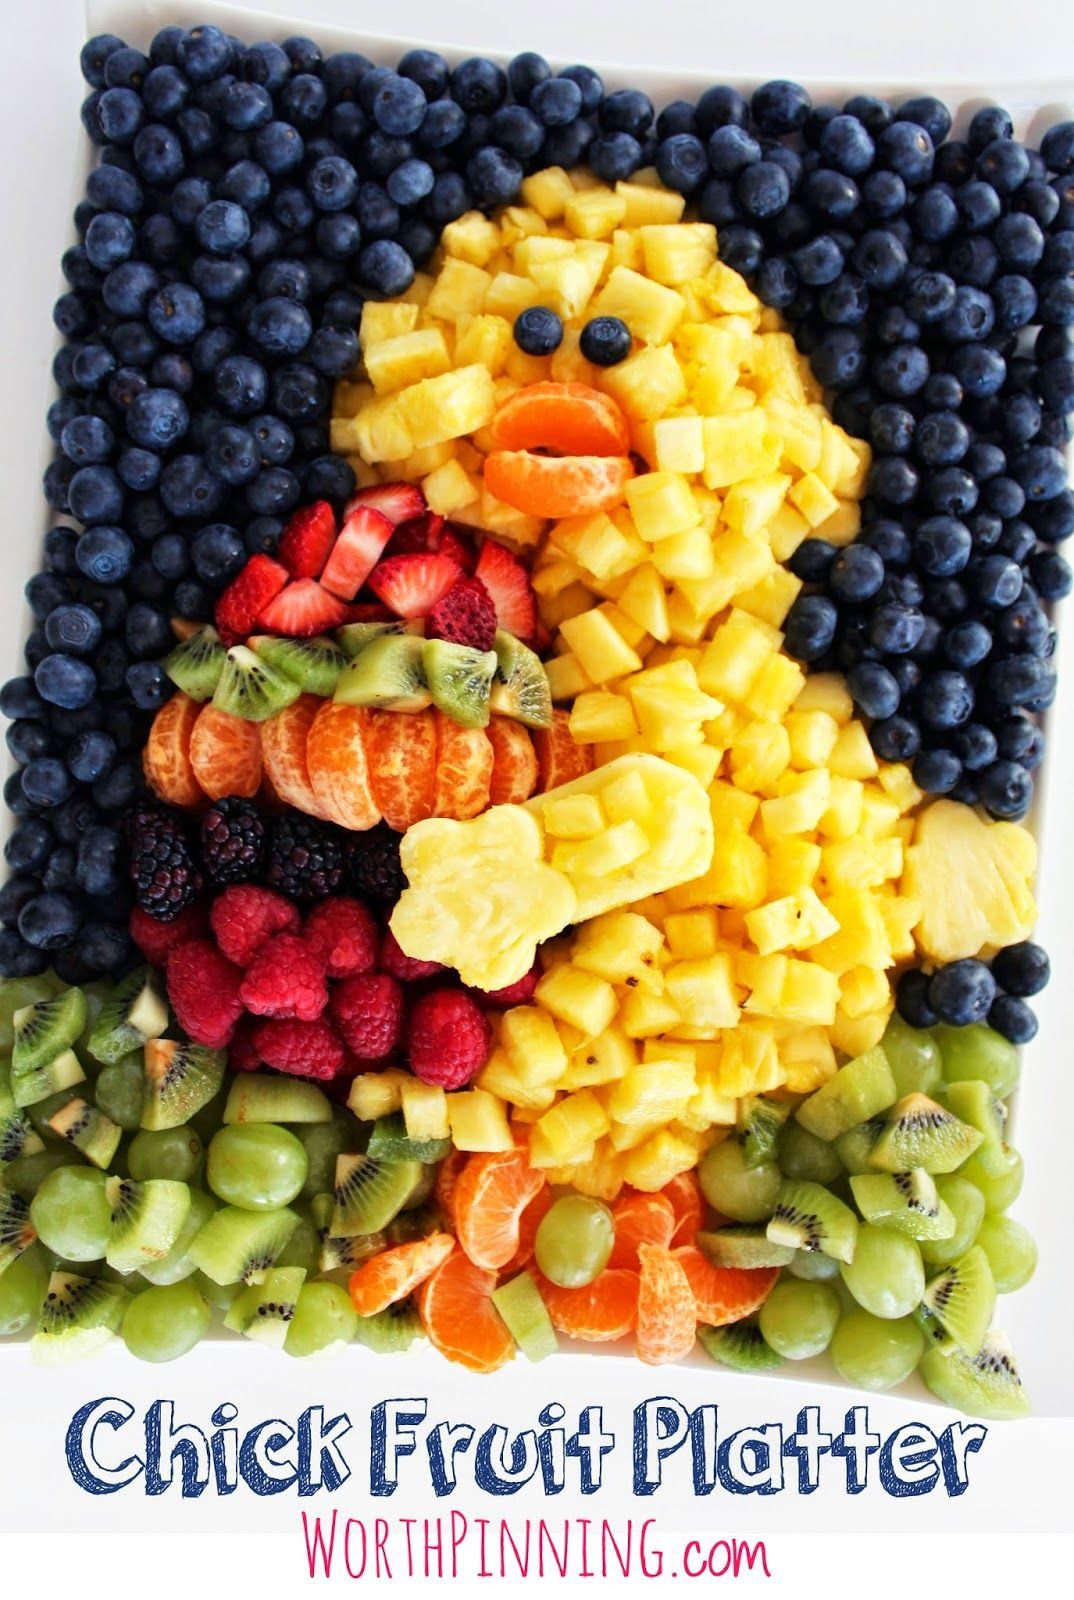 Easter Fruit Tray Ideas
 Easter Chick Fruit Platter fruits Pinterest